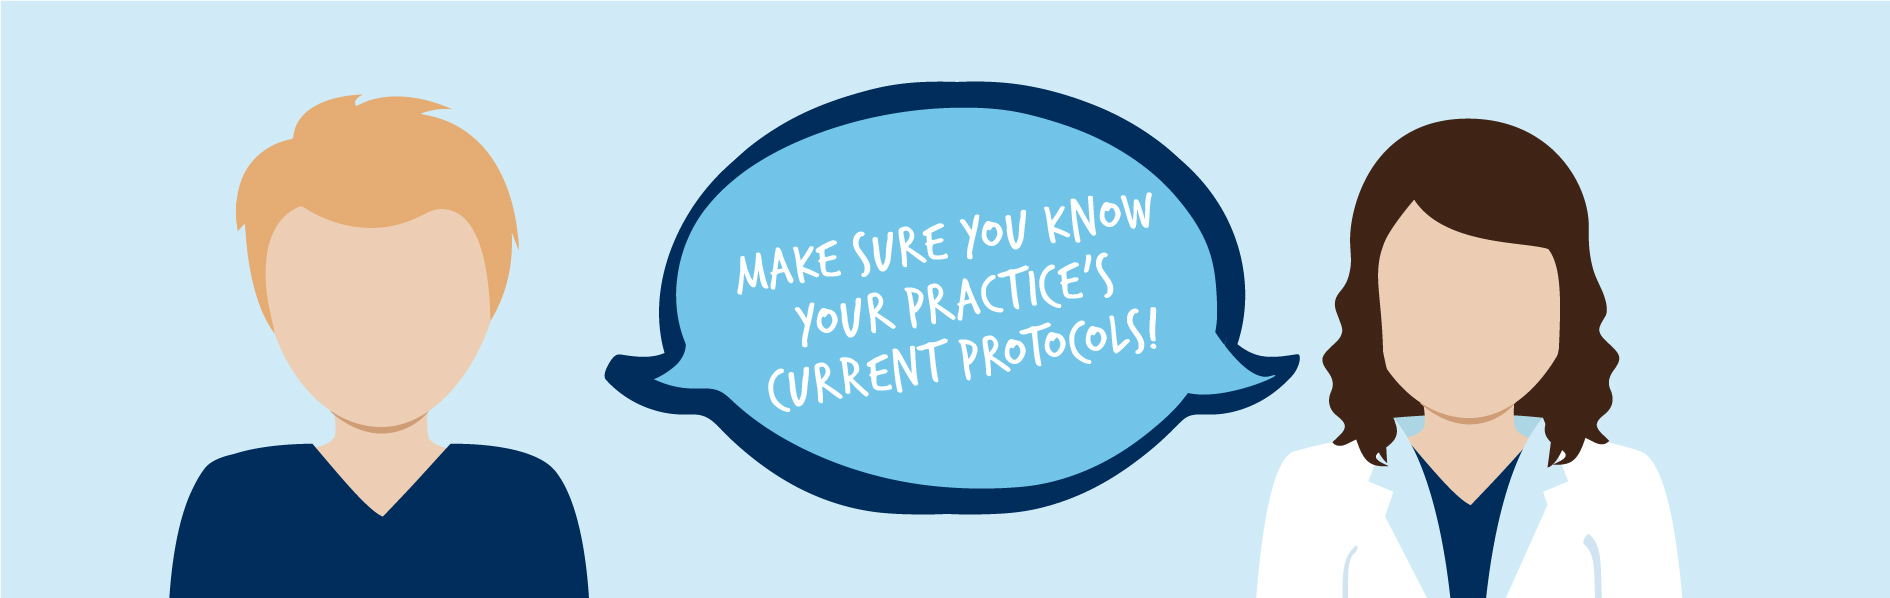 COVID-19 Practice Protocols